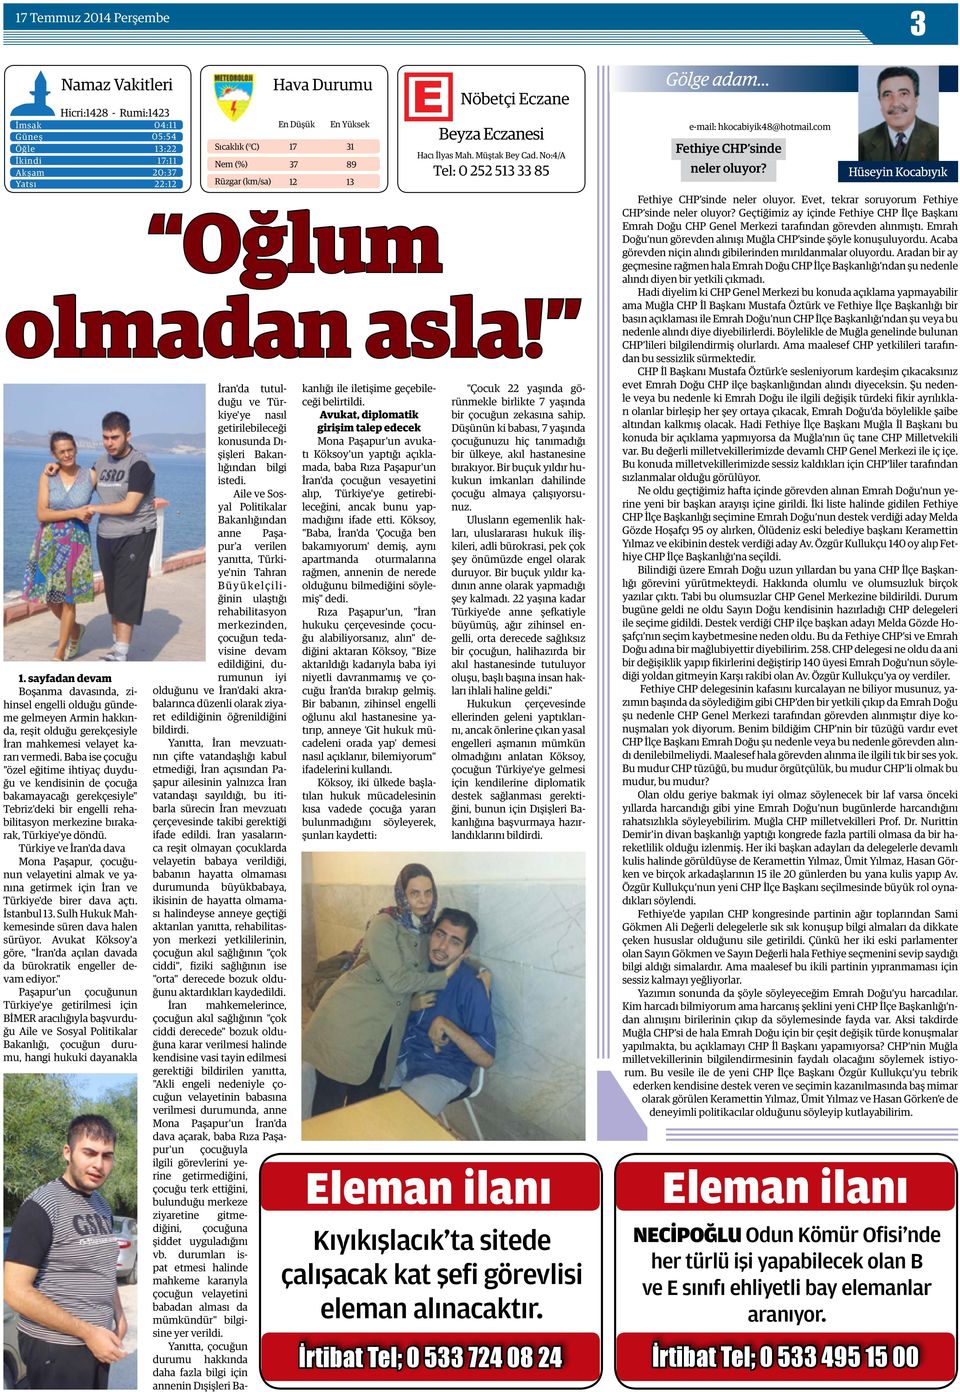 Baba ise çocuğu "özel eğitime ihtiyaç duyduğu ve kendisinin de çocuğa bakamayacağı gerekçesiyle" Tebriz'deki bir engelli rehabilitasyon merkezine bırakarak, Türkiye'ye döndü.